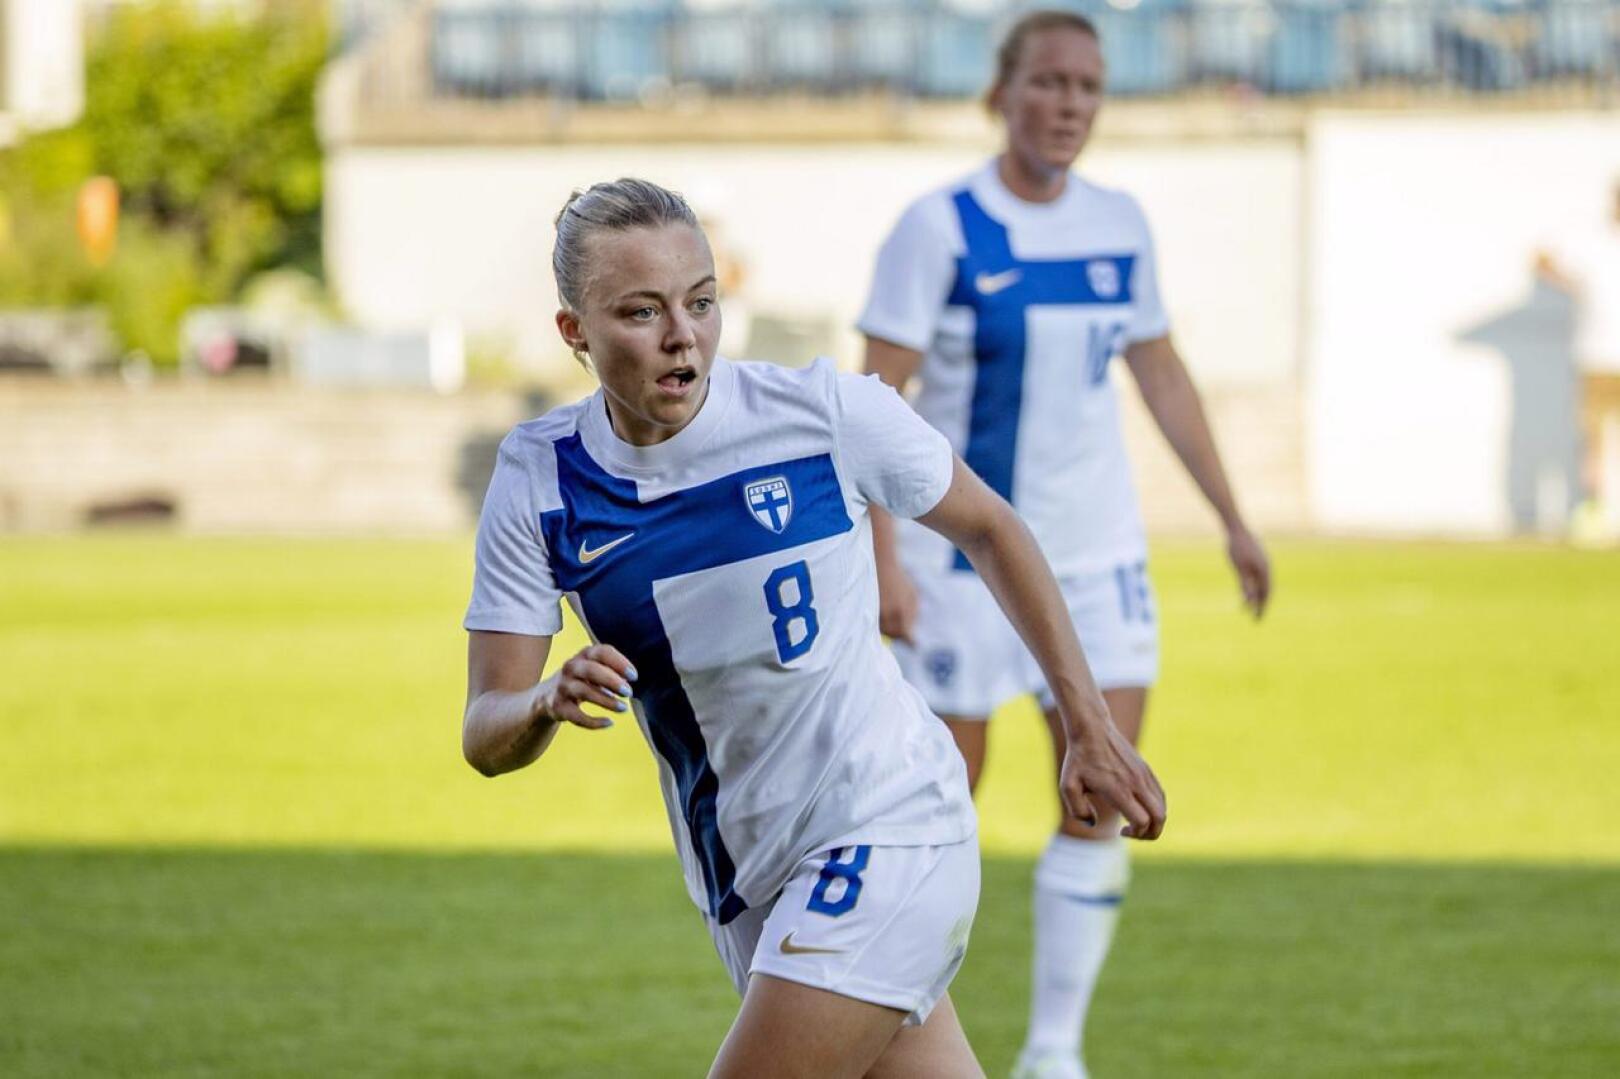 Helmareiden luottopelaajiin kuuluva Olga Ahtinen oli yllättynyt valinnastaan Damallsvenskanin parhaaksi pelaajaksi.